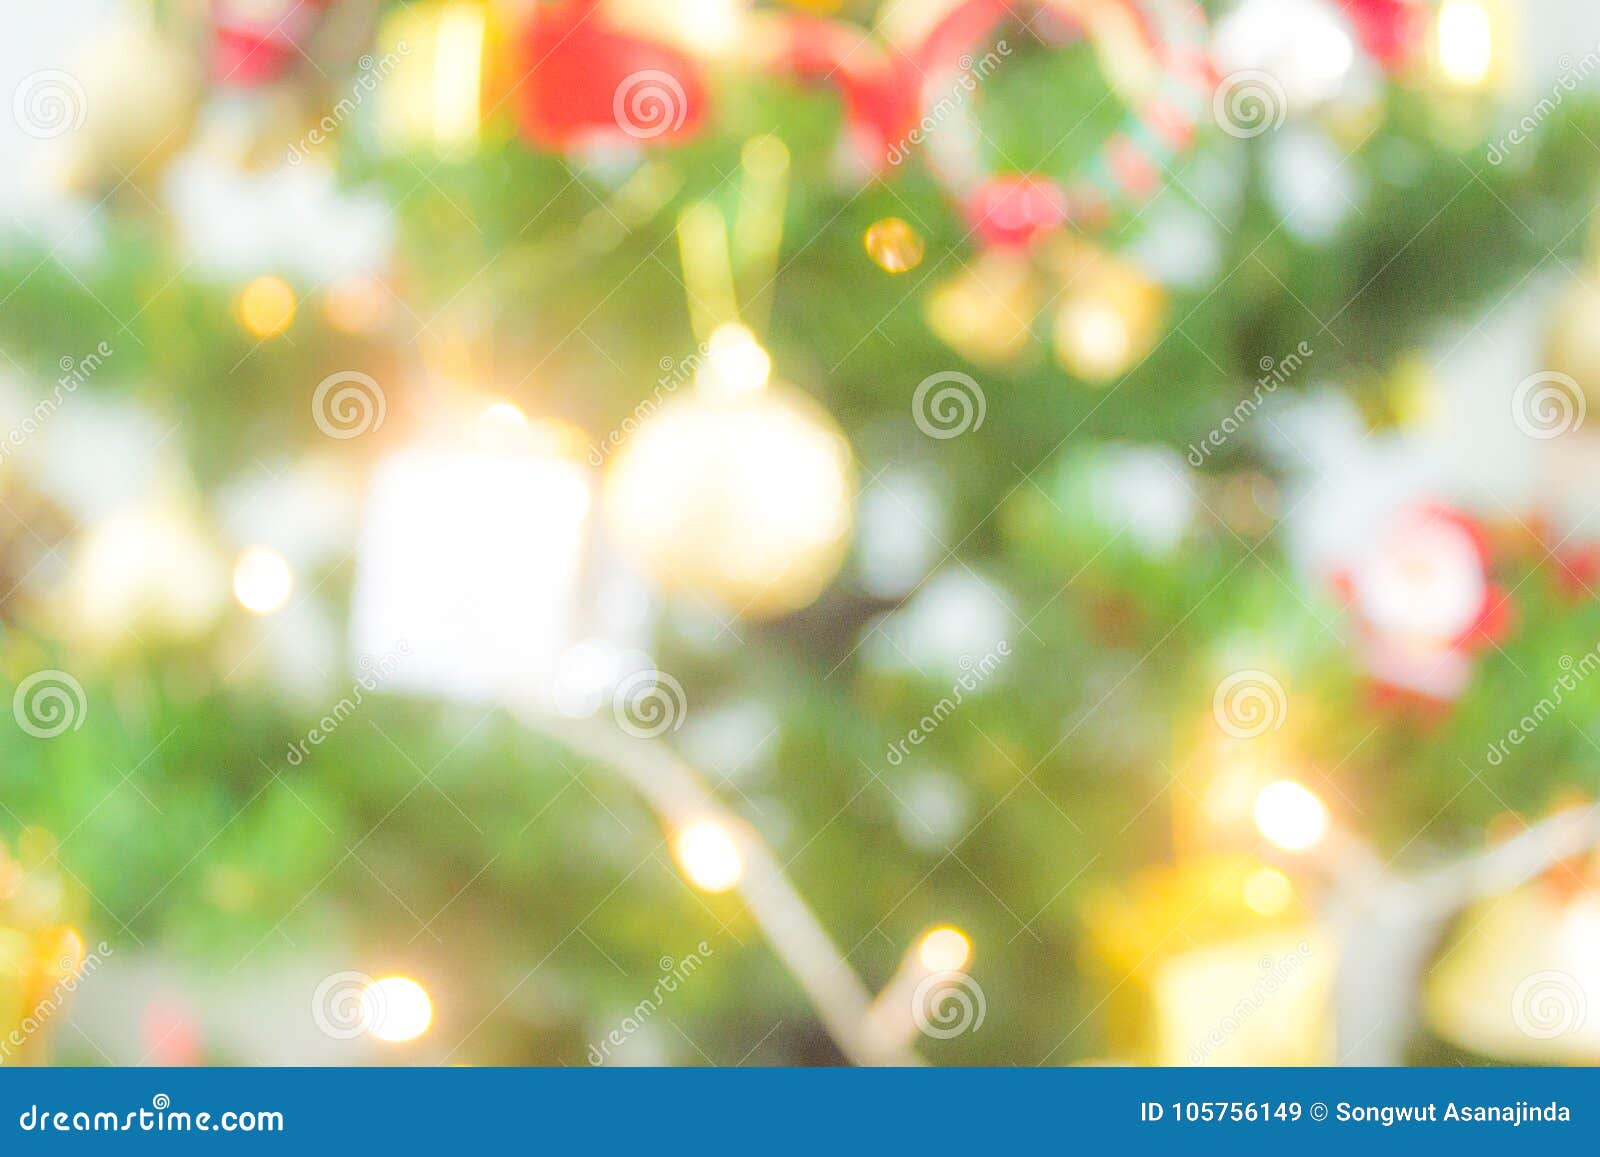 Hãy cùng ngắm những đèn điện đầy phấn khích của mùa Giáng sinh! Với hàng ngàn đèn LED rực rỡ và sắc màu trên những cây thông trang trí, chắc chắn bạn sẽ cảm thấy mình như đang ở trong một thế giới kỳ diệu. Hãy bấm vào hình ảnh để trải nghiệm điều đó nhé!